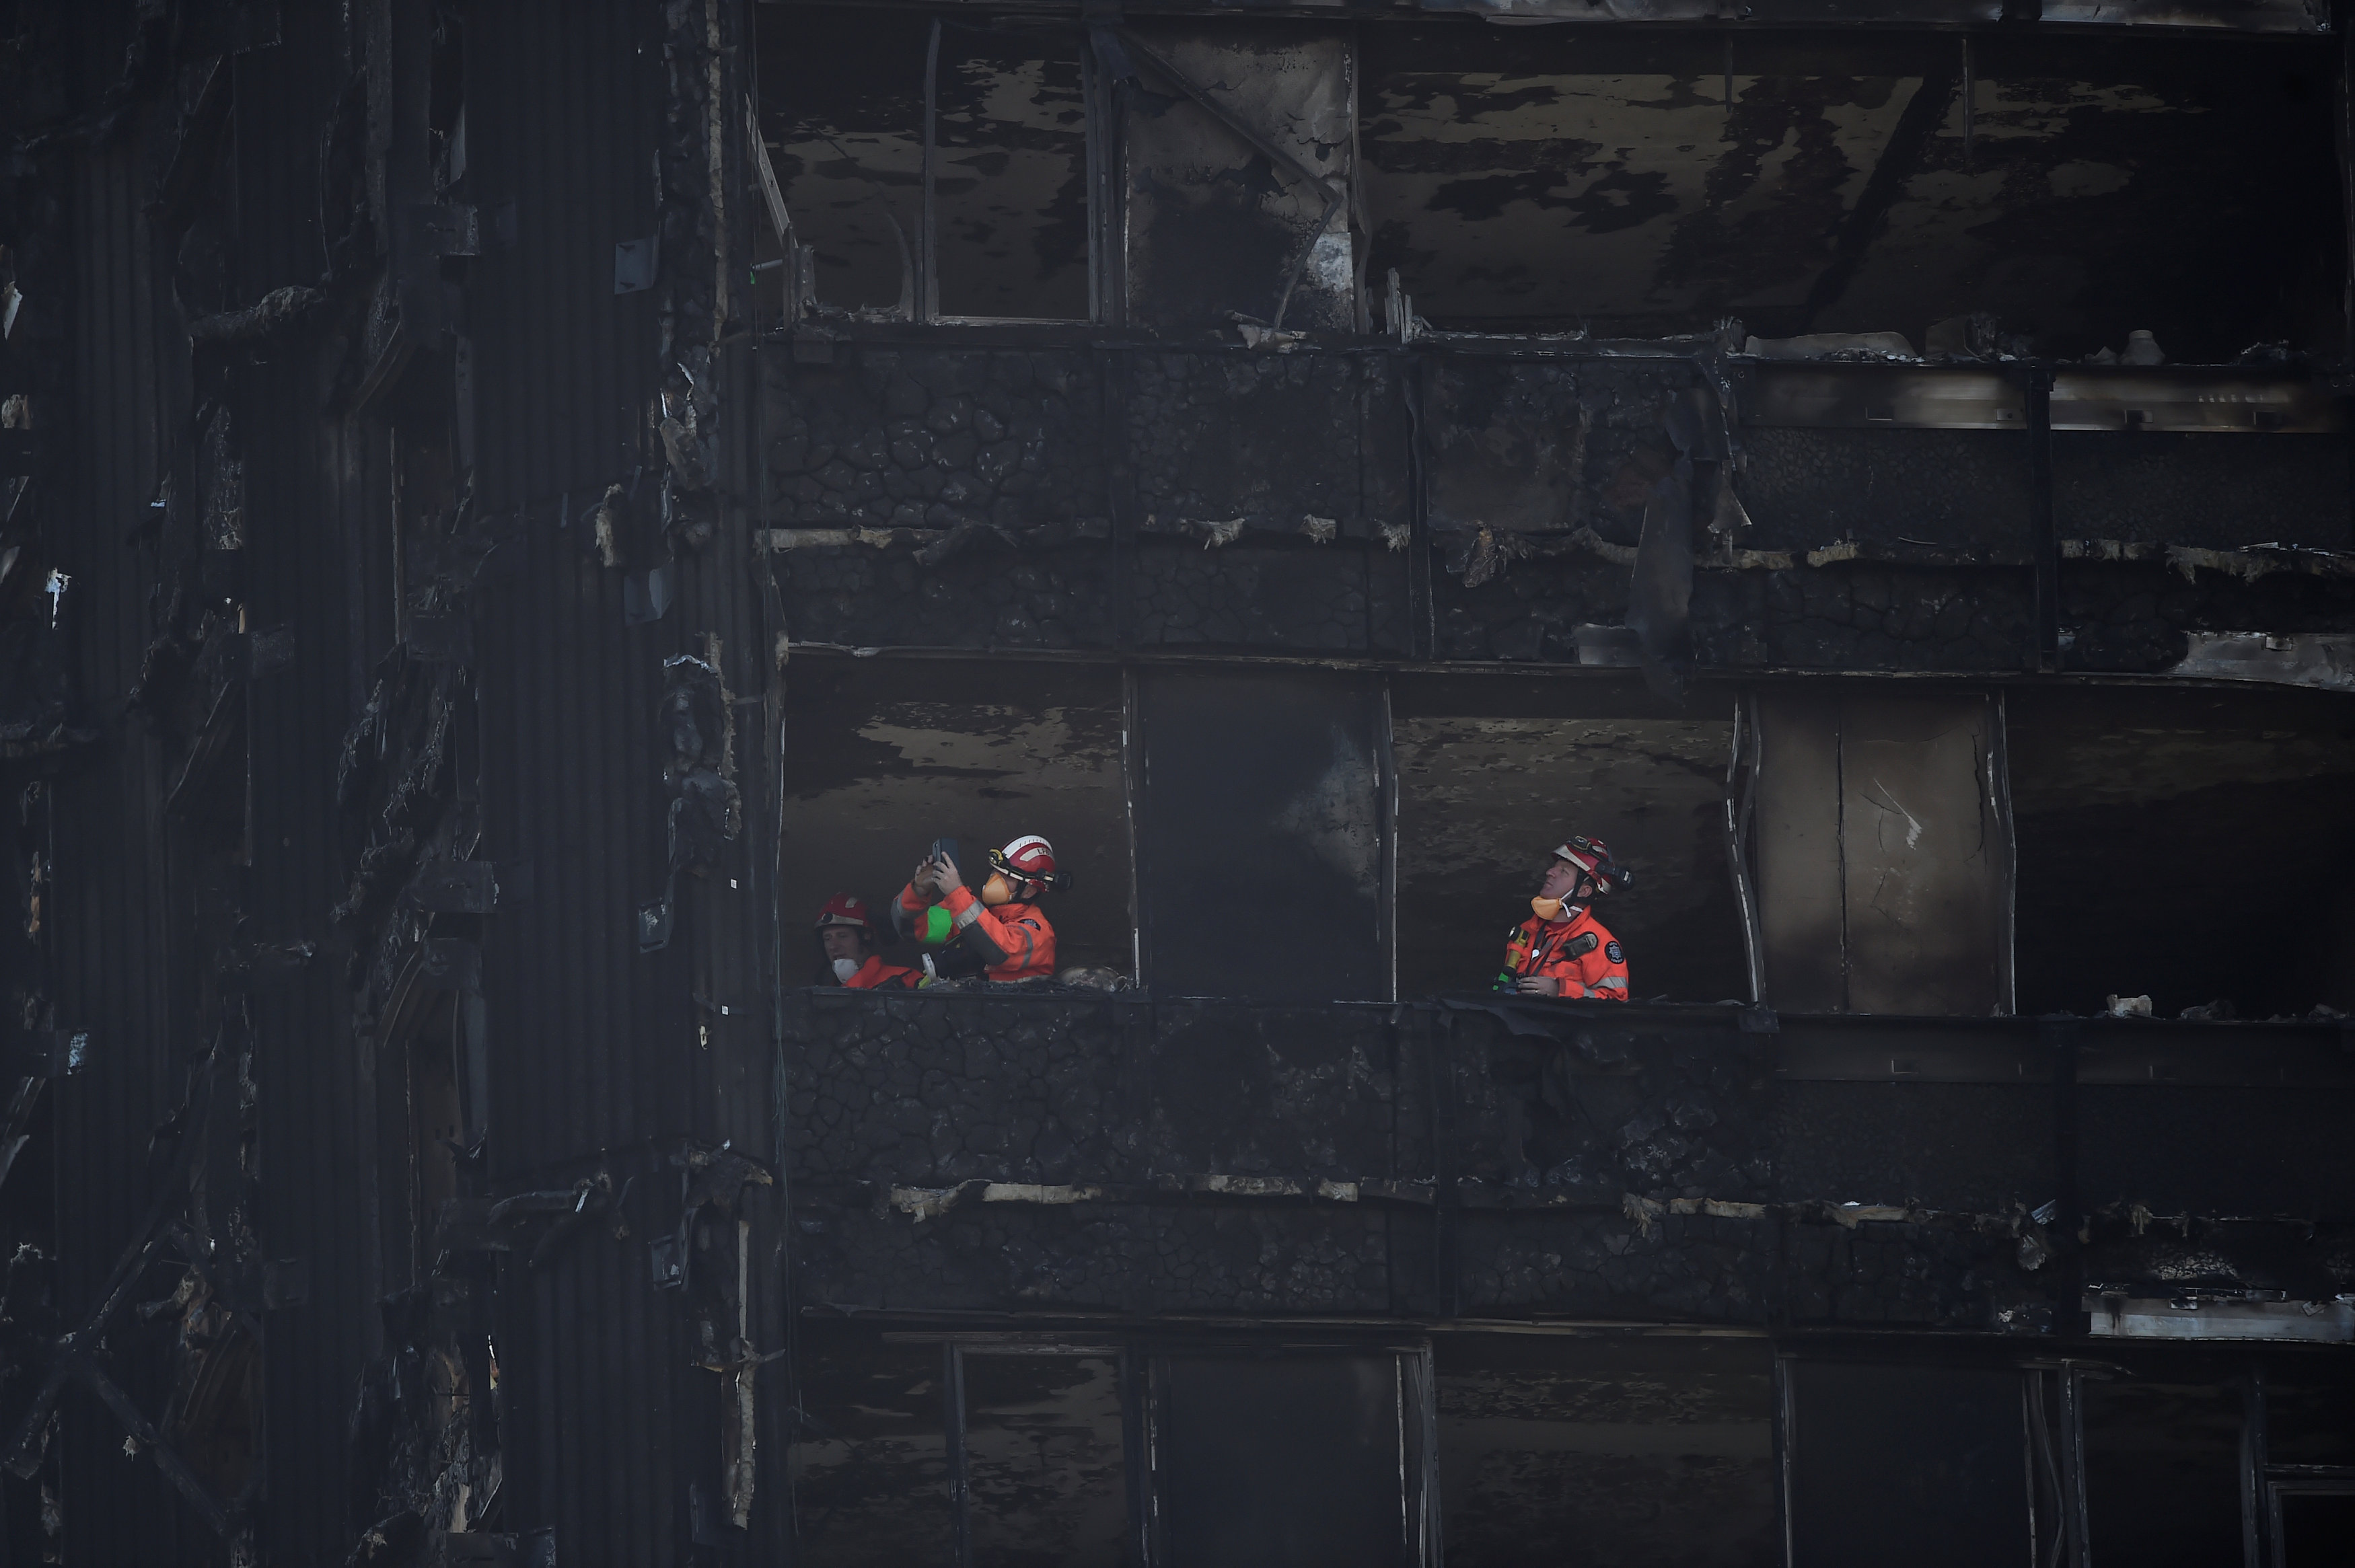 رجال الطوارئ يواصلون عملهم فى البرج المحترق